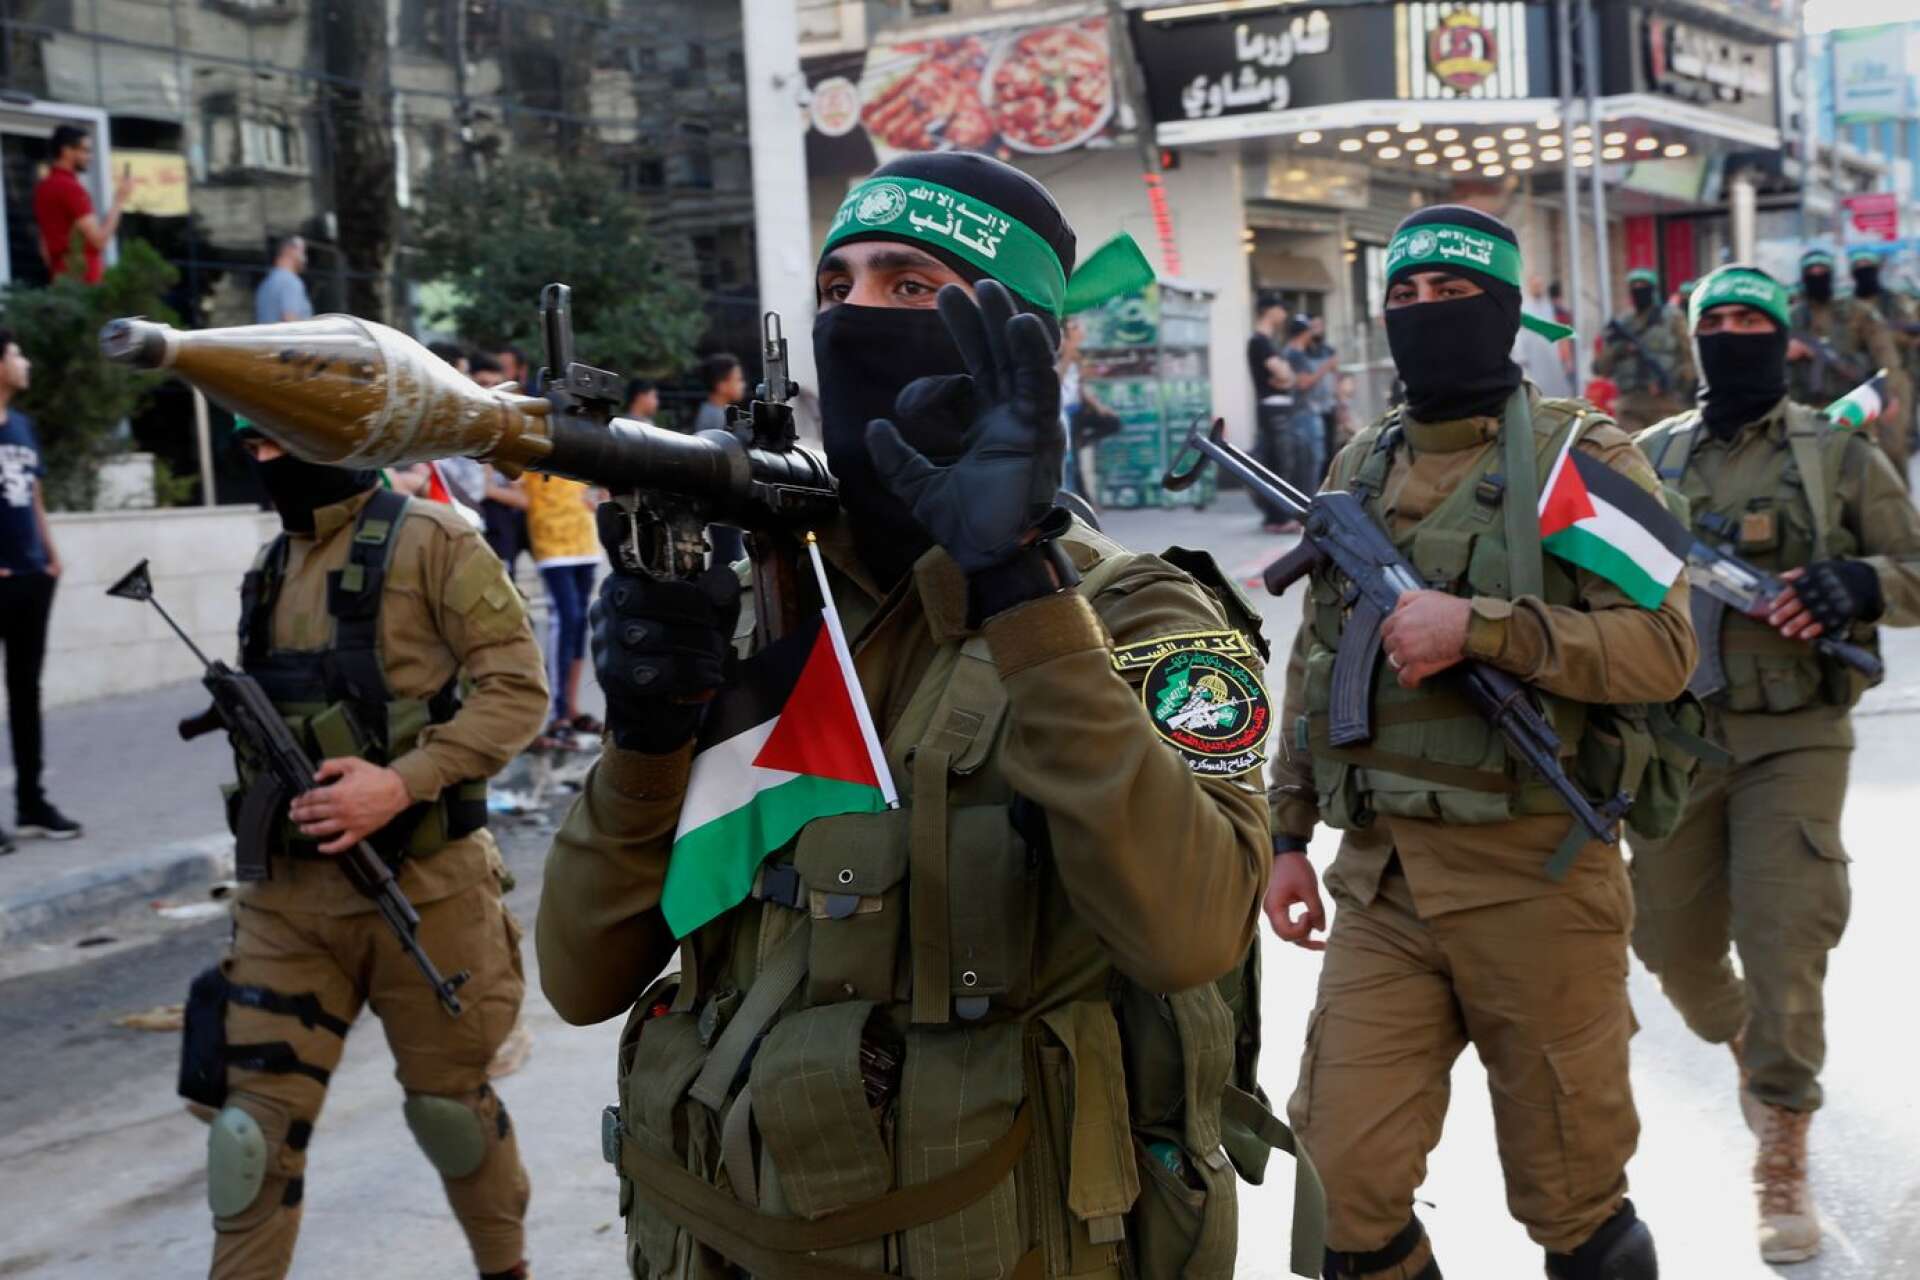 Utvecklingen i Gaza bestäms av terrororganisationen Hamas och deras beväpnade gren, skriver debattören i sin replik. 